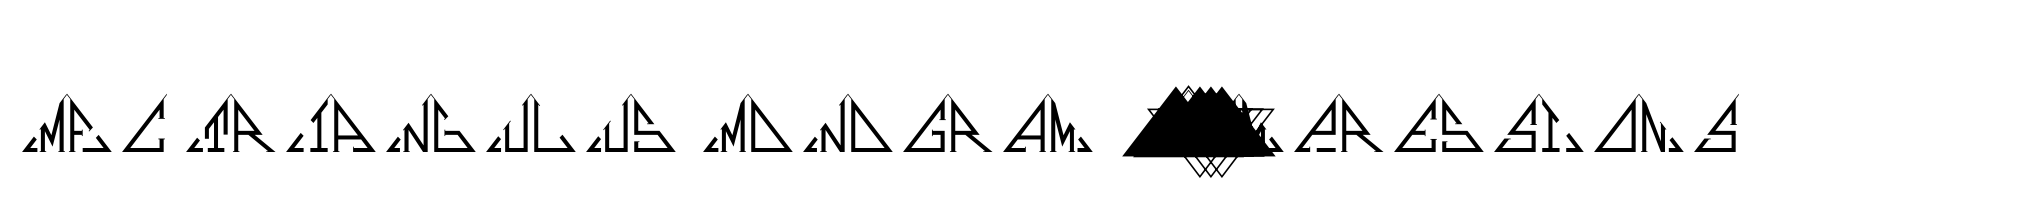 MFC Triangulus Monogram 25000 Impressions image